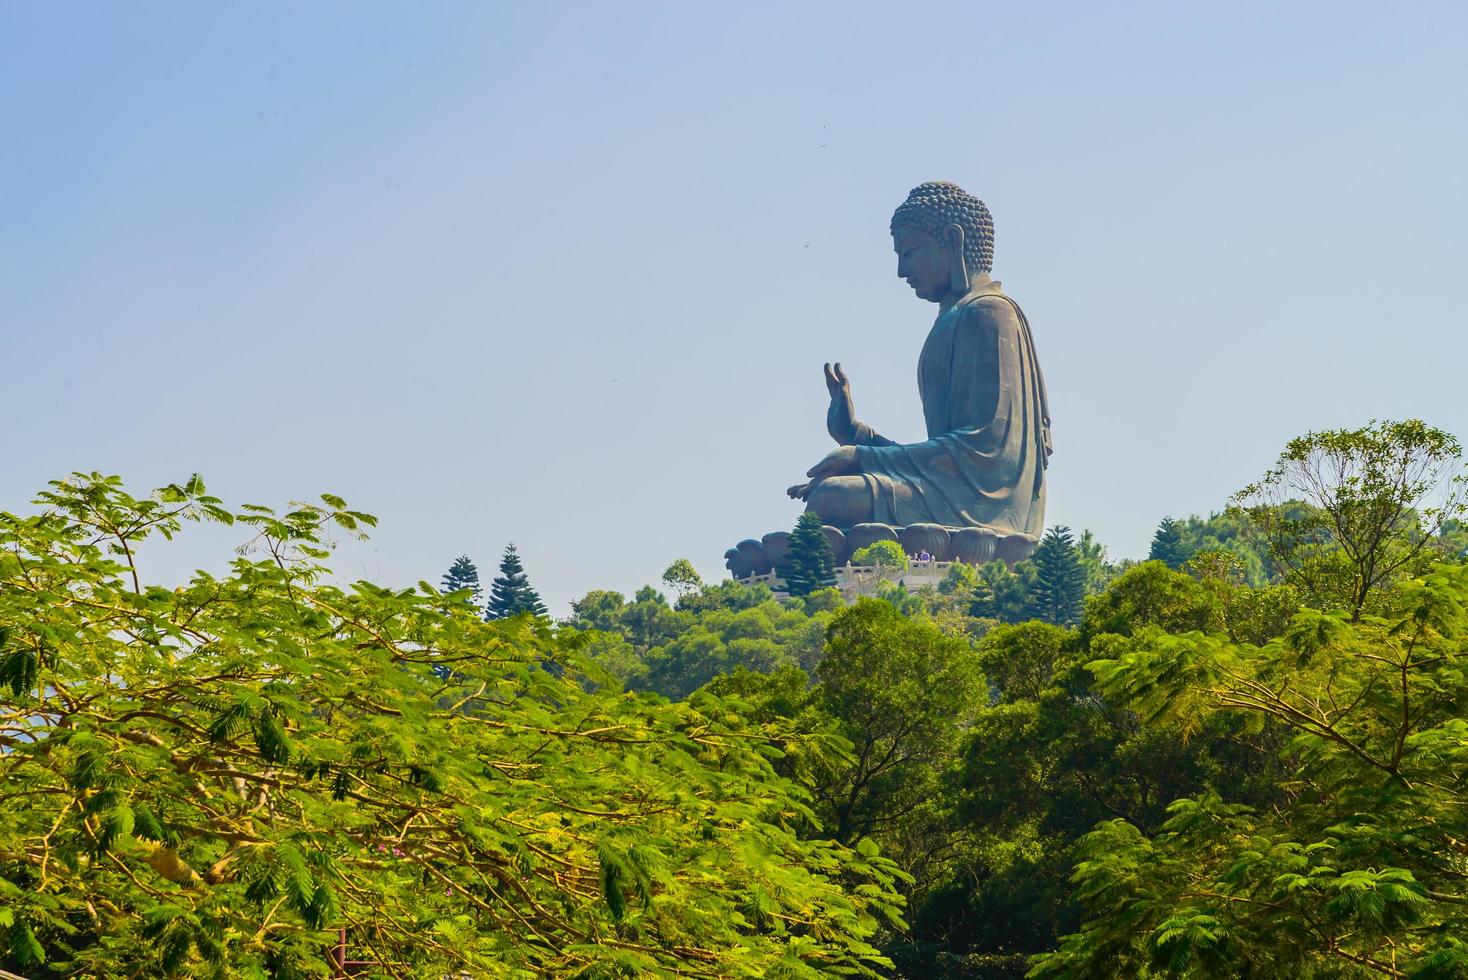 Giant Buddha statue in Hong Kong, China photo